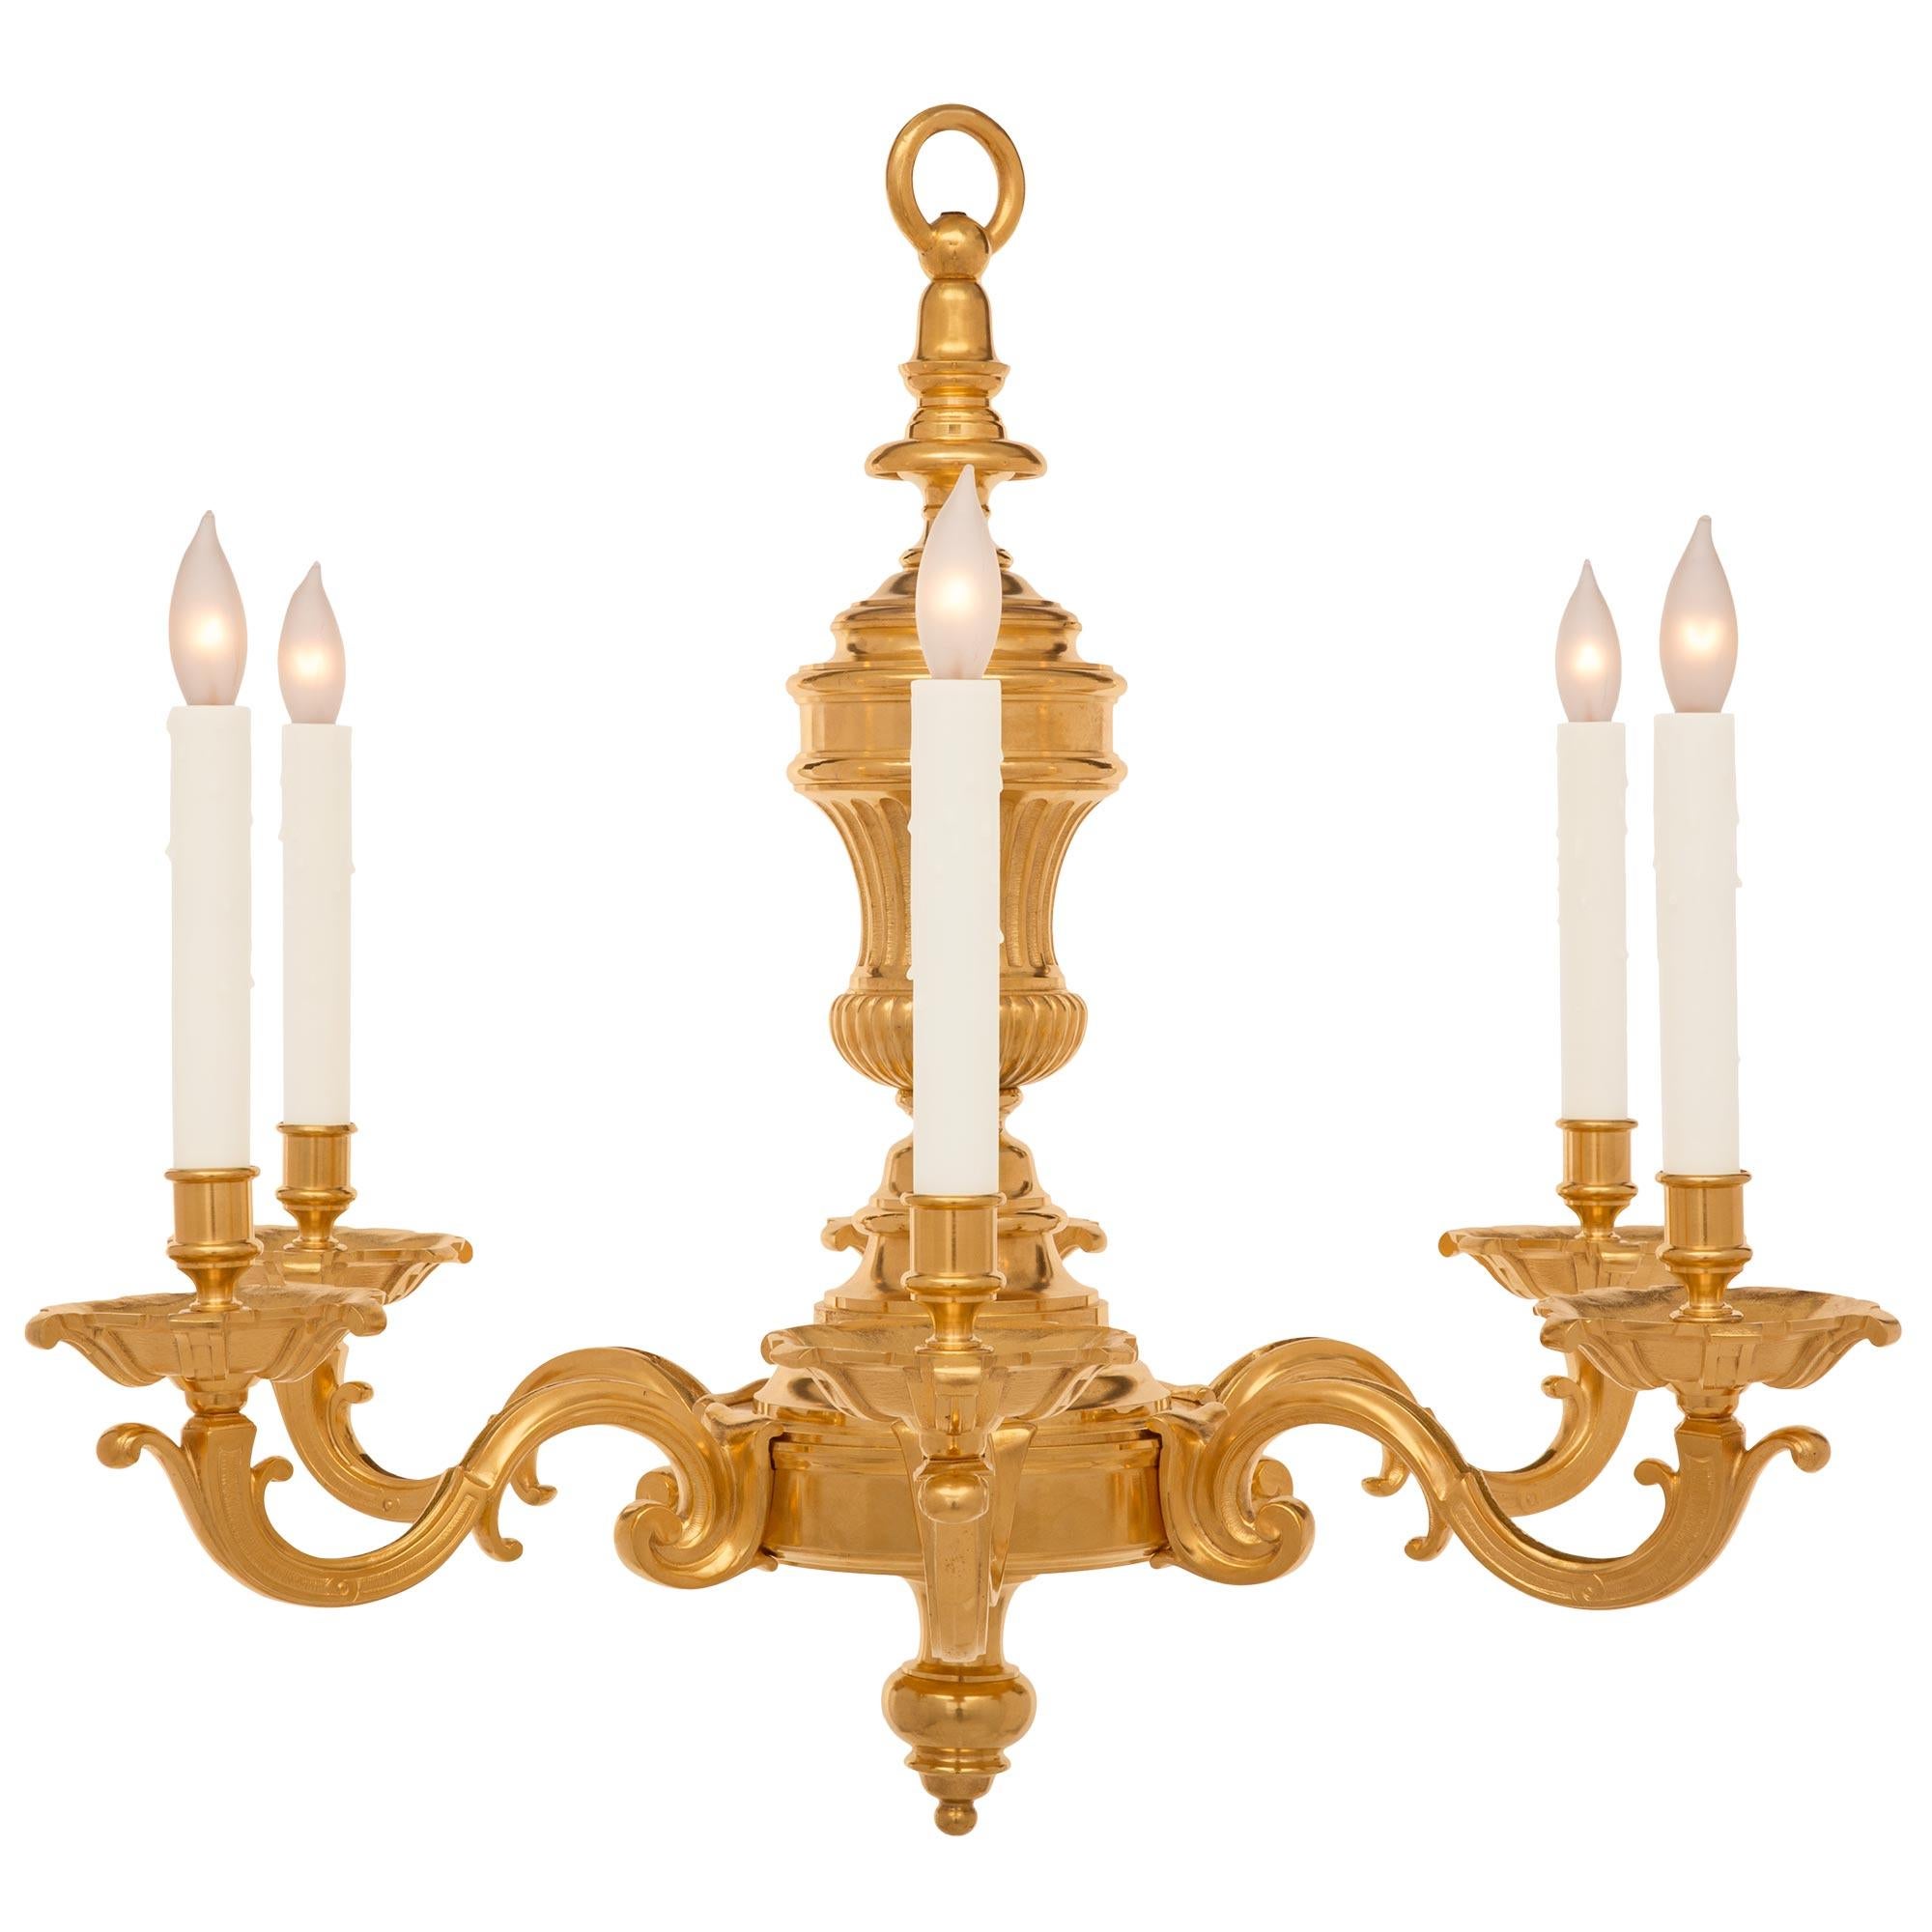 Un très élégant lustre français du 19ème Louis XVI en bronze doré. Le lustre à six bras est centré par un joli épi de faîtage en forme de topie tachetée. Le corps présente un motif décoratif étagé et tacheté d'où partent les bras élégamment